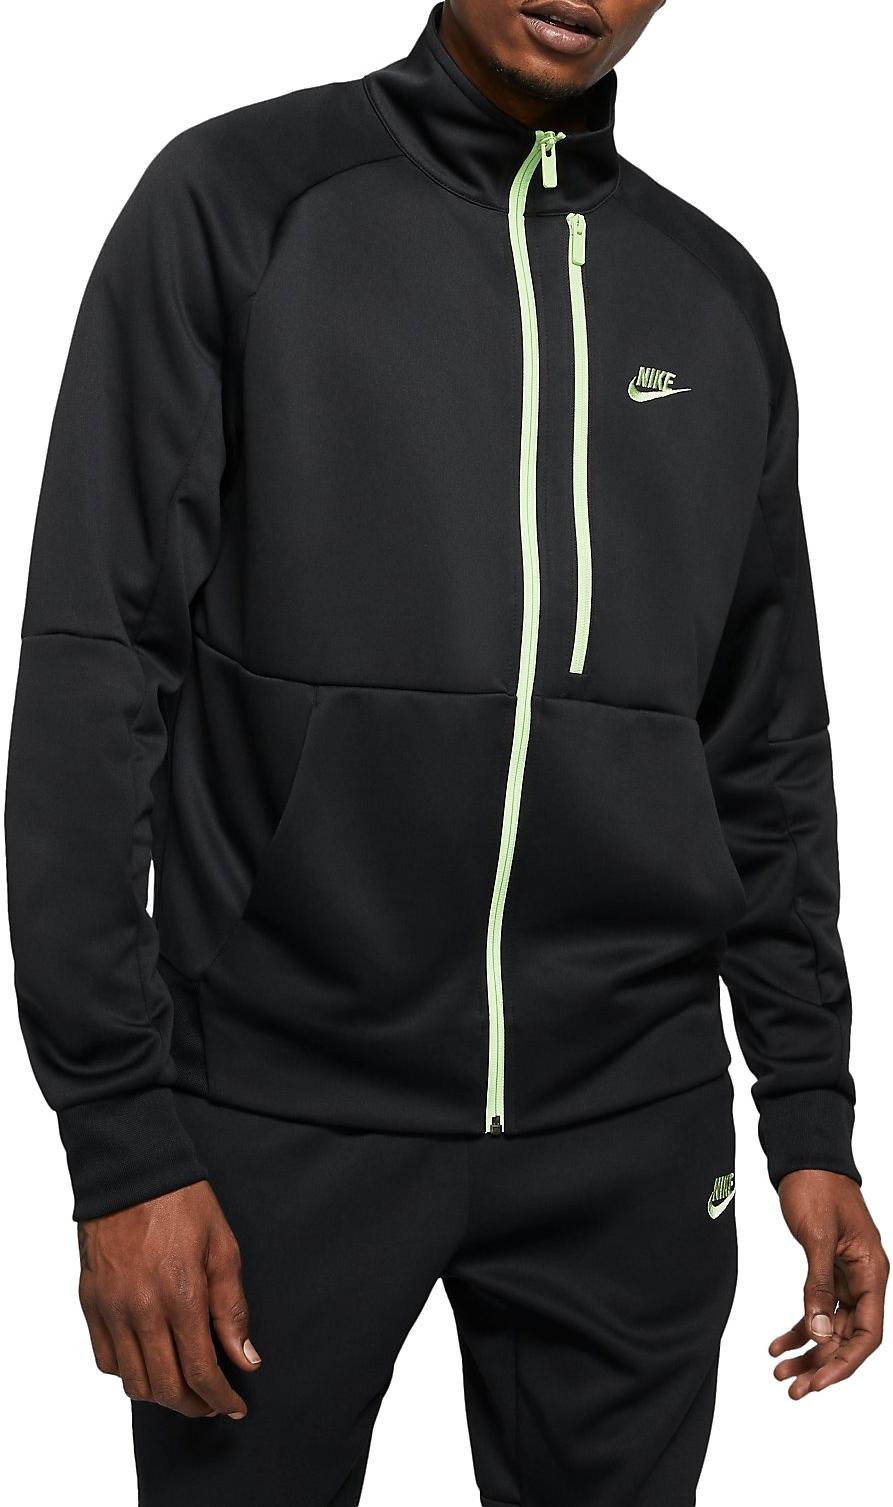 talento yeso Bloquear Nike Sportswear Tribute Men s N98 Jacket - Top4Running.com